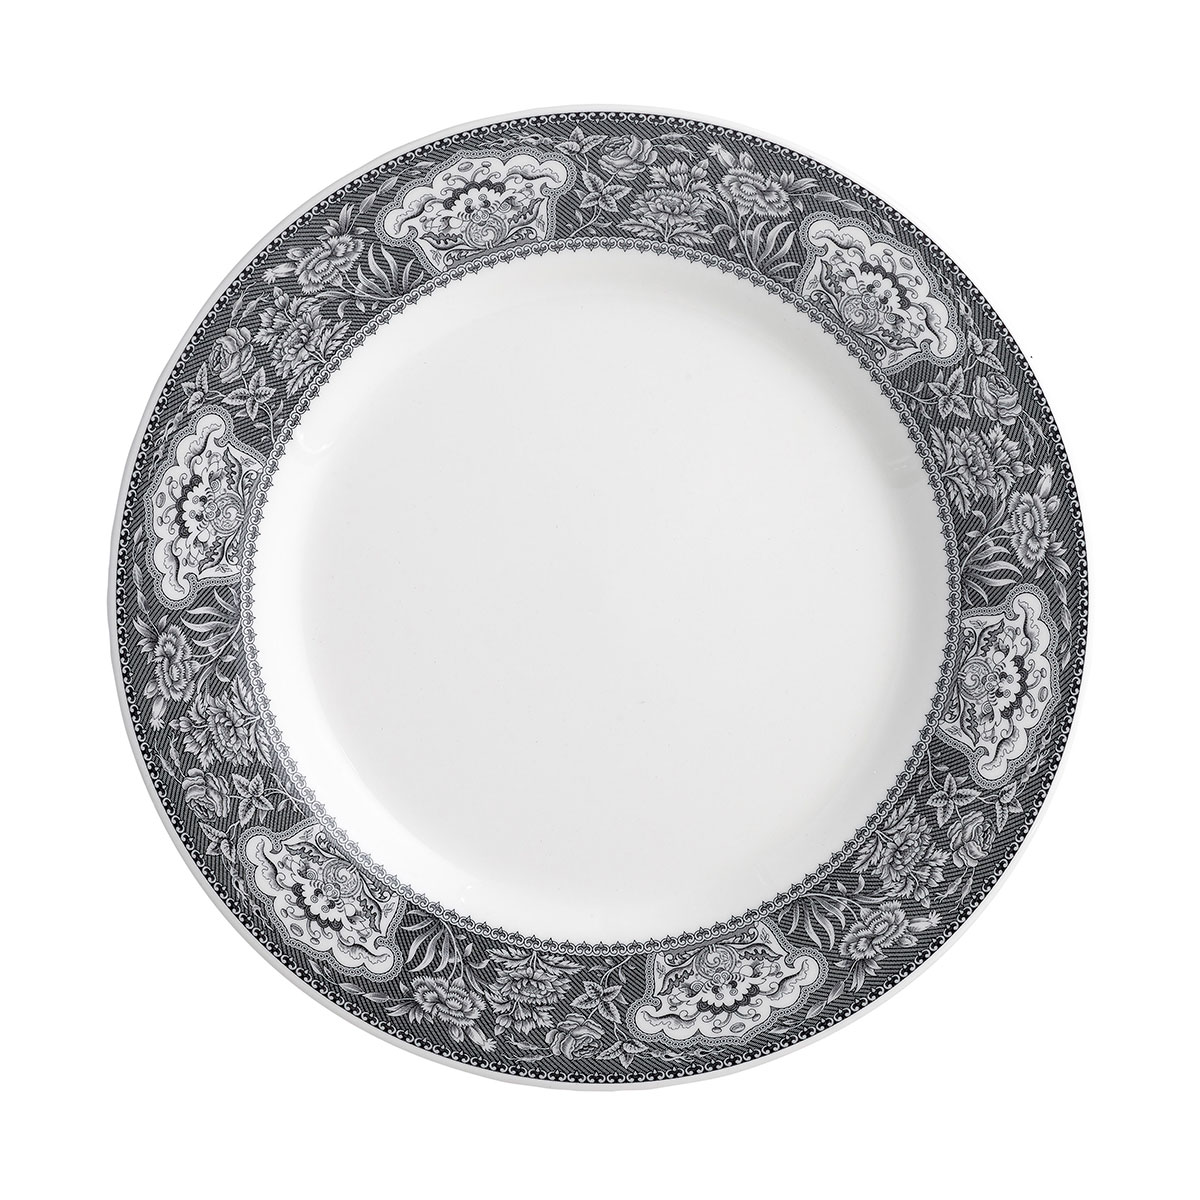 Spode Heritage Dinner Plate, Floral